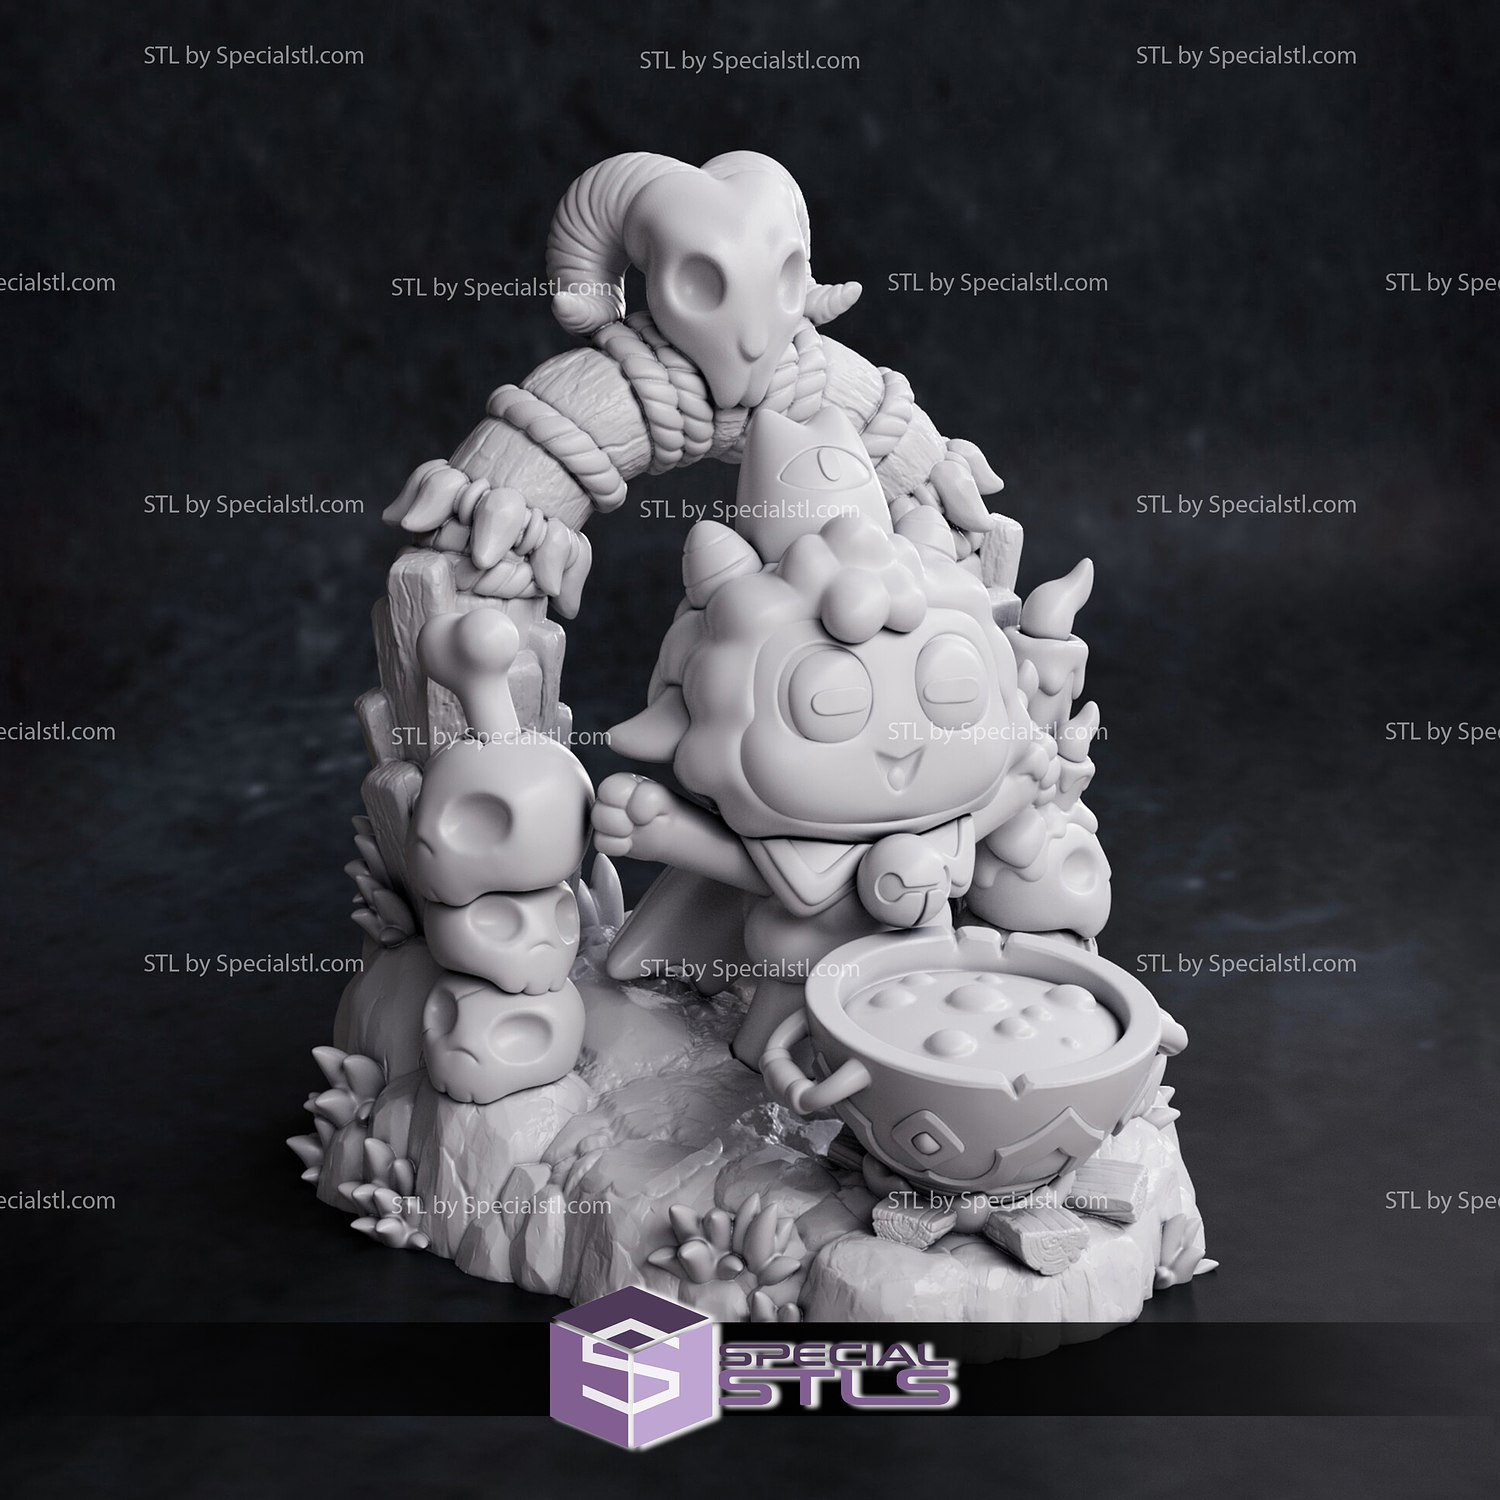 Cult of the Lamb - 3D Print figure 3D model 3D printable